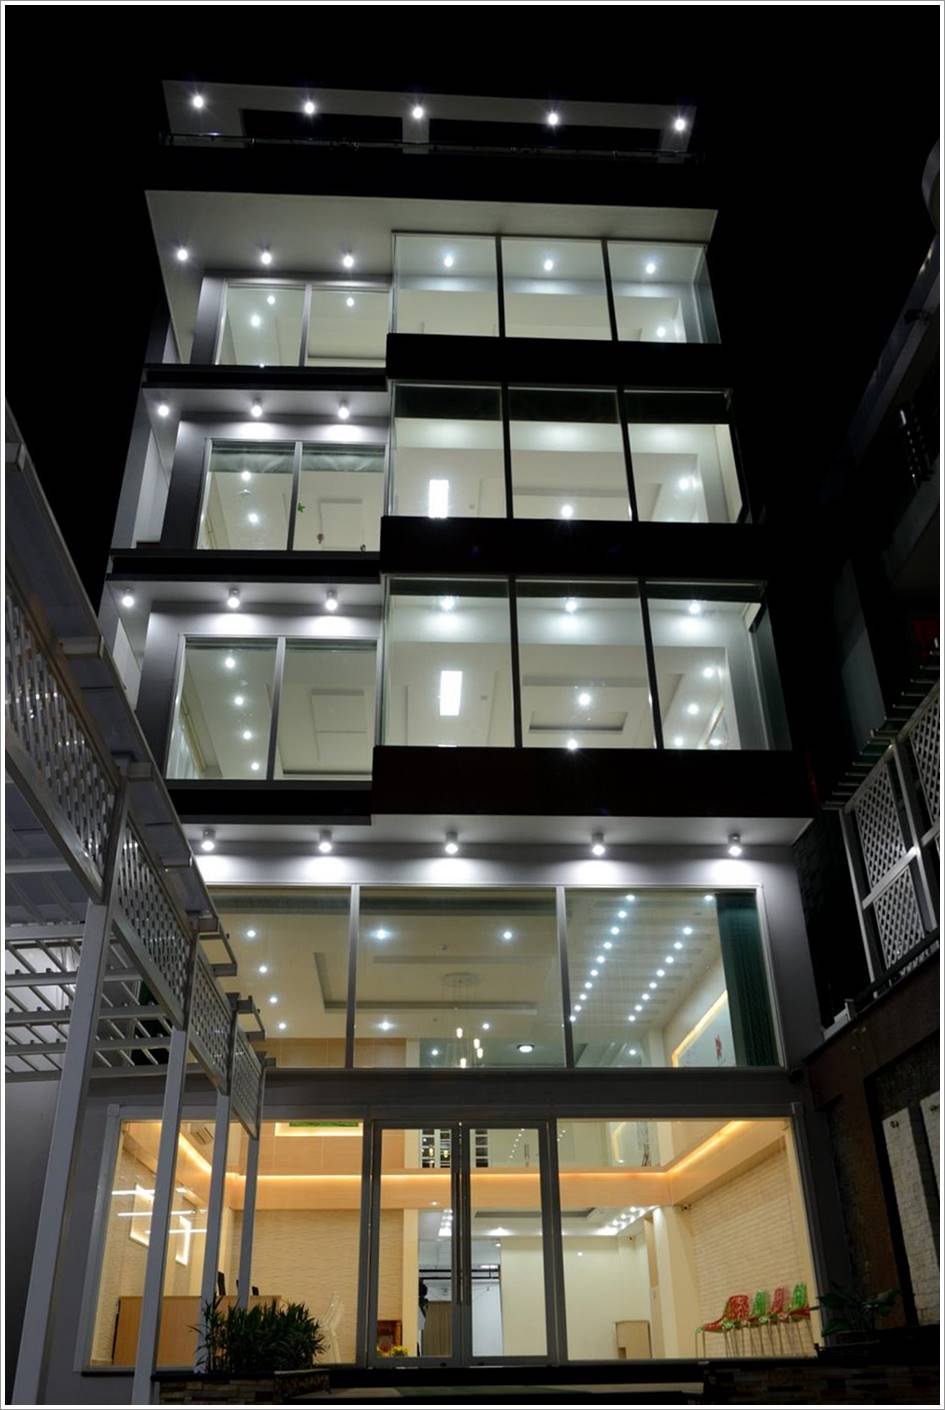 Cao ốc văn phòng cho thuê Dương Quảng Hàm 1 Building, Quận Gò Vấp, TP.HCM - vlook.vn